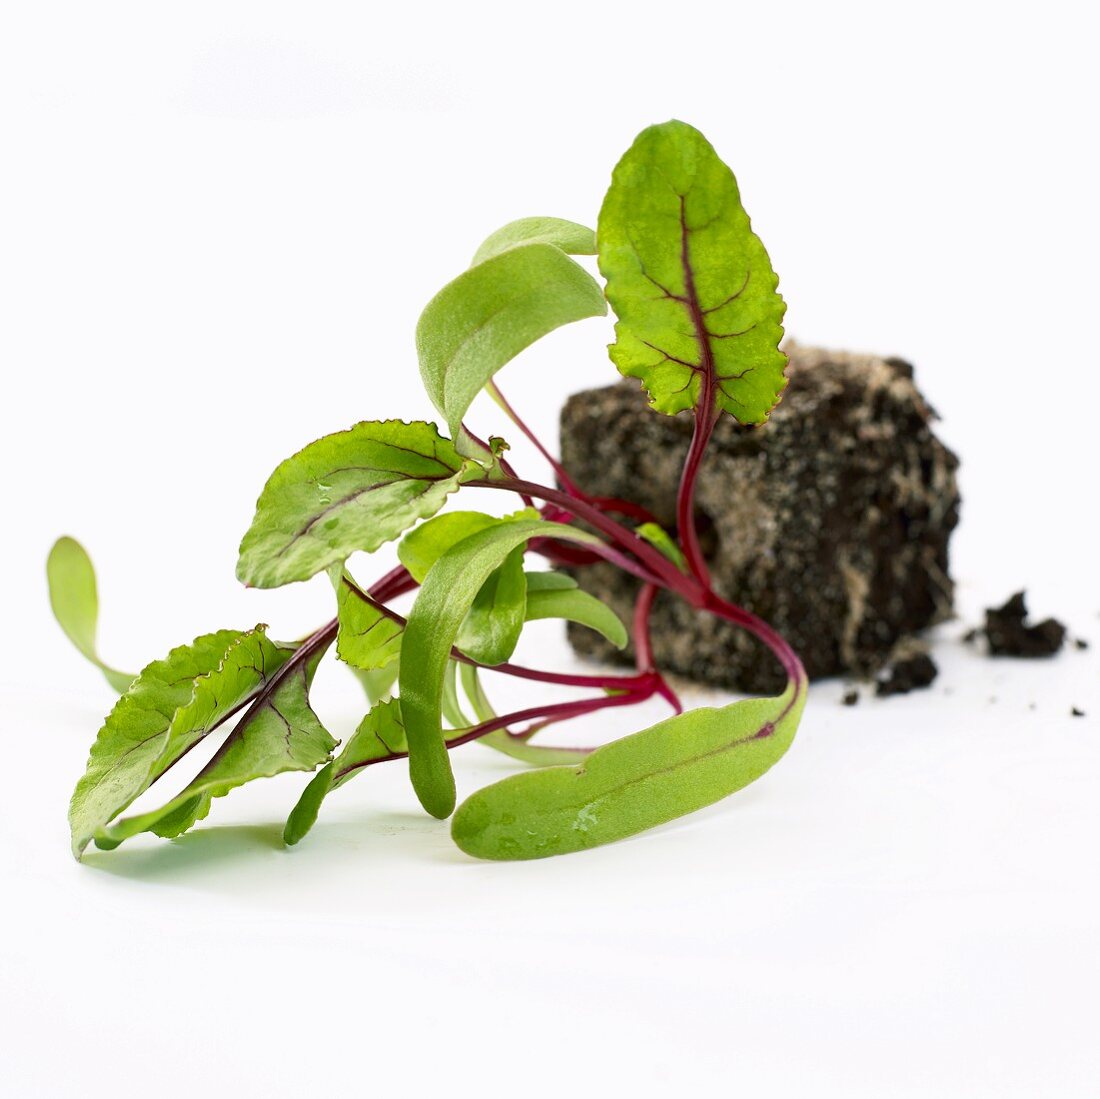 Junge Rote-Bete-Pflanze (Beta vulgaris)